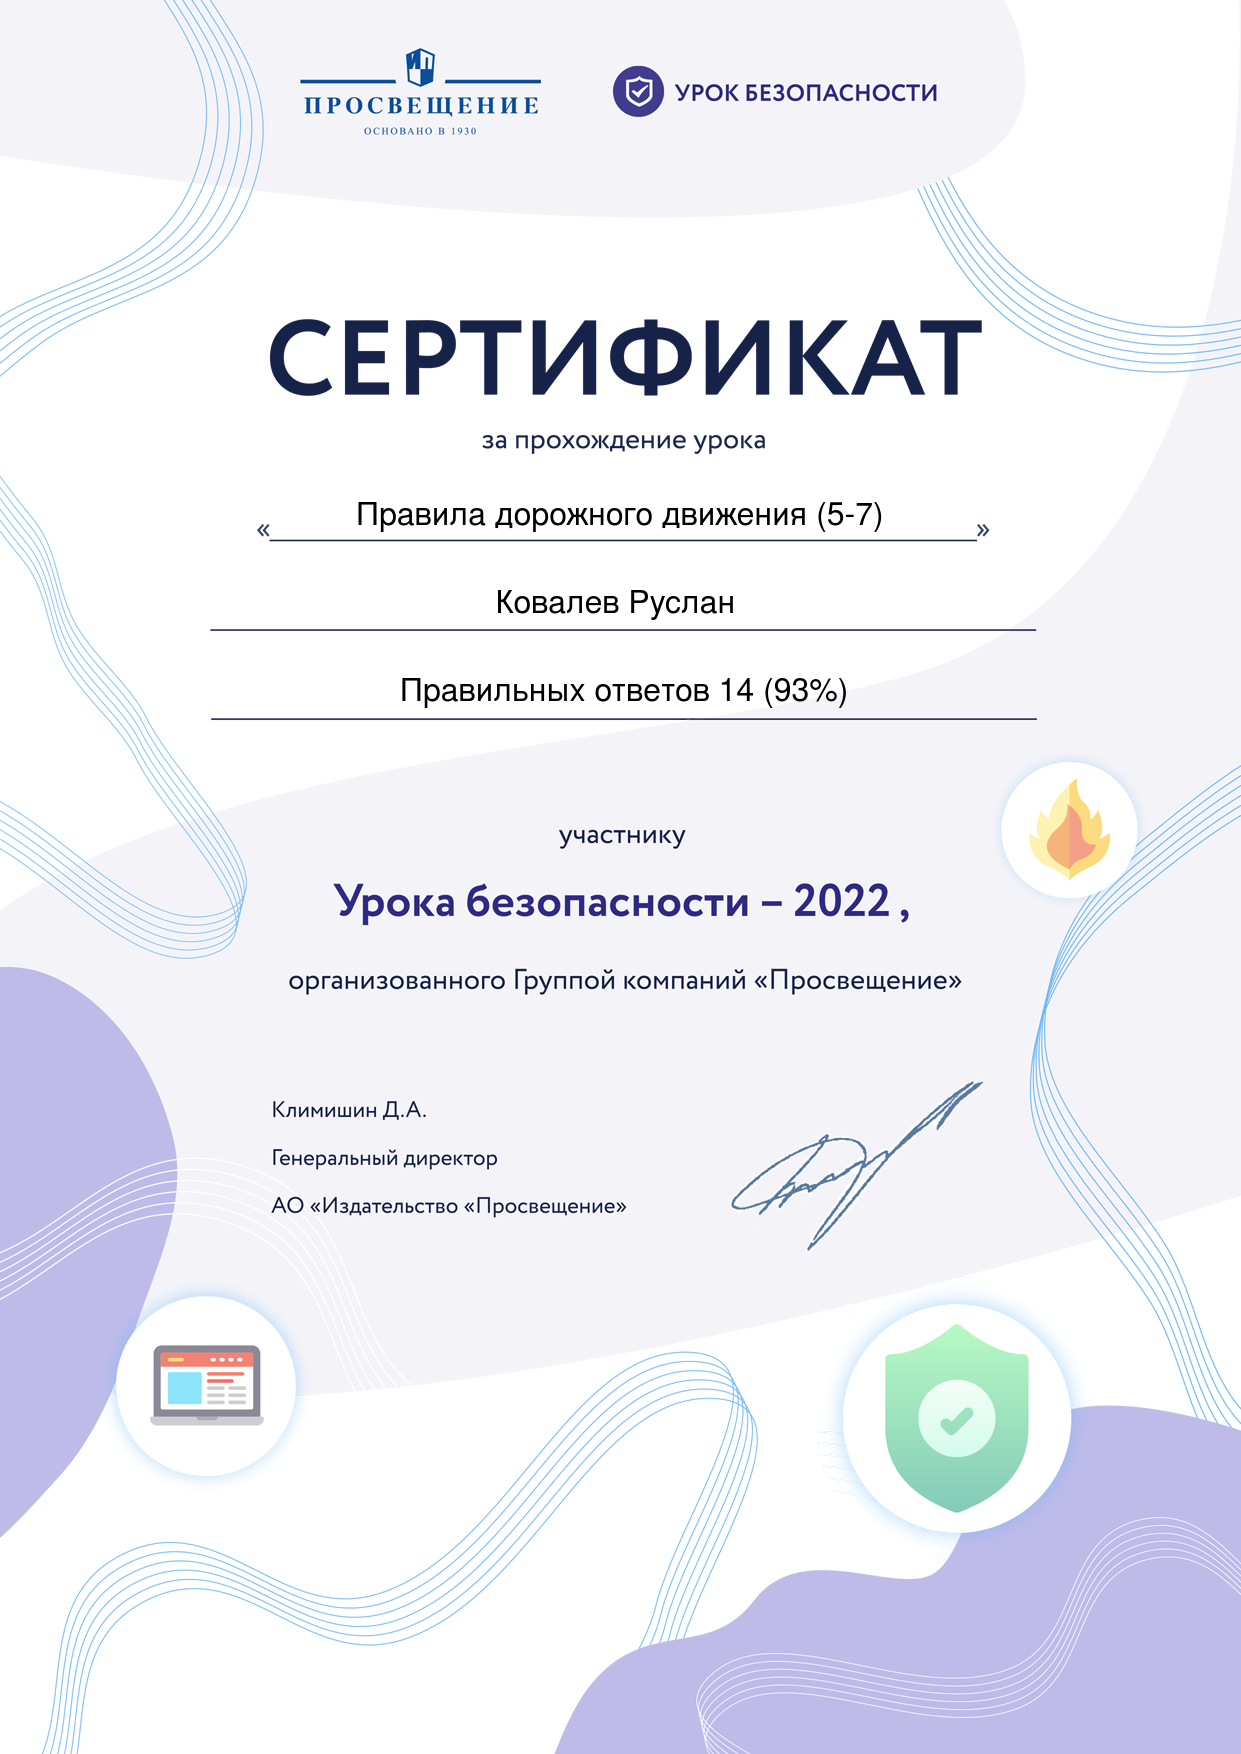 Всероссийская акция «Урок безопасности-2022».